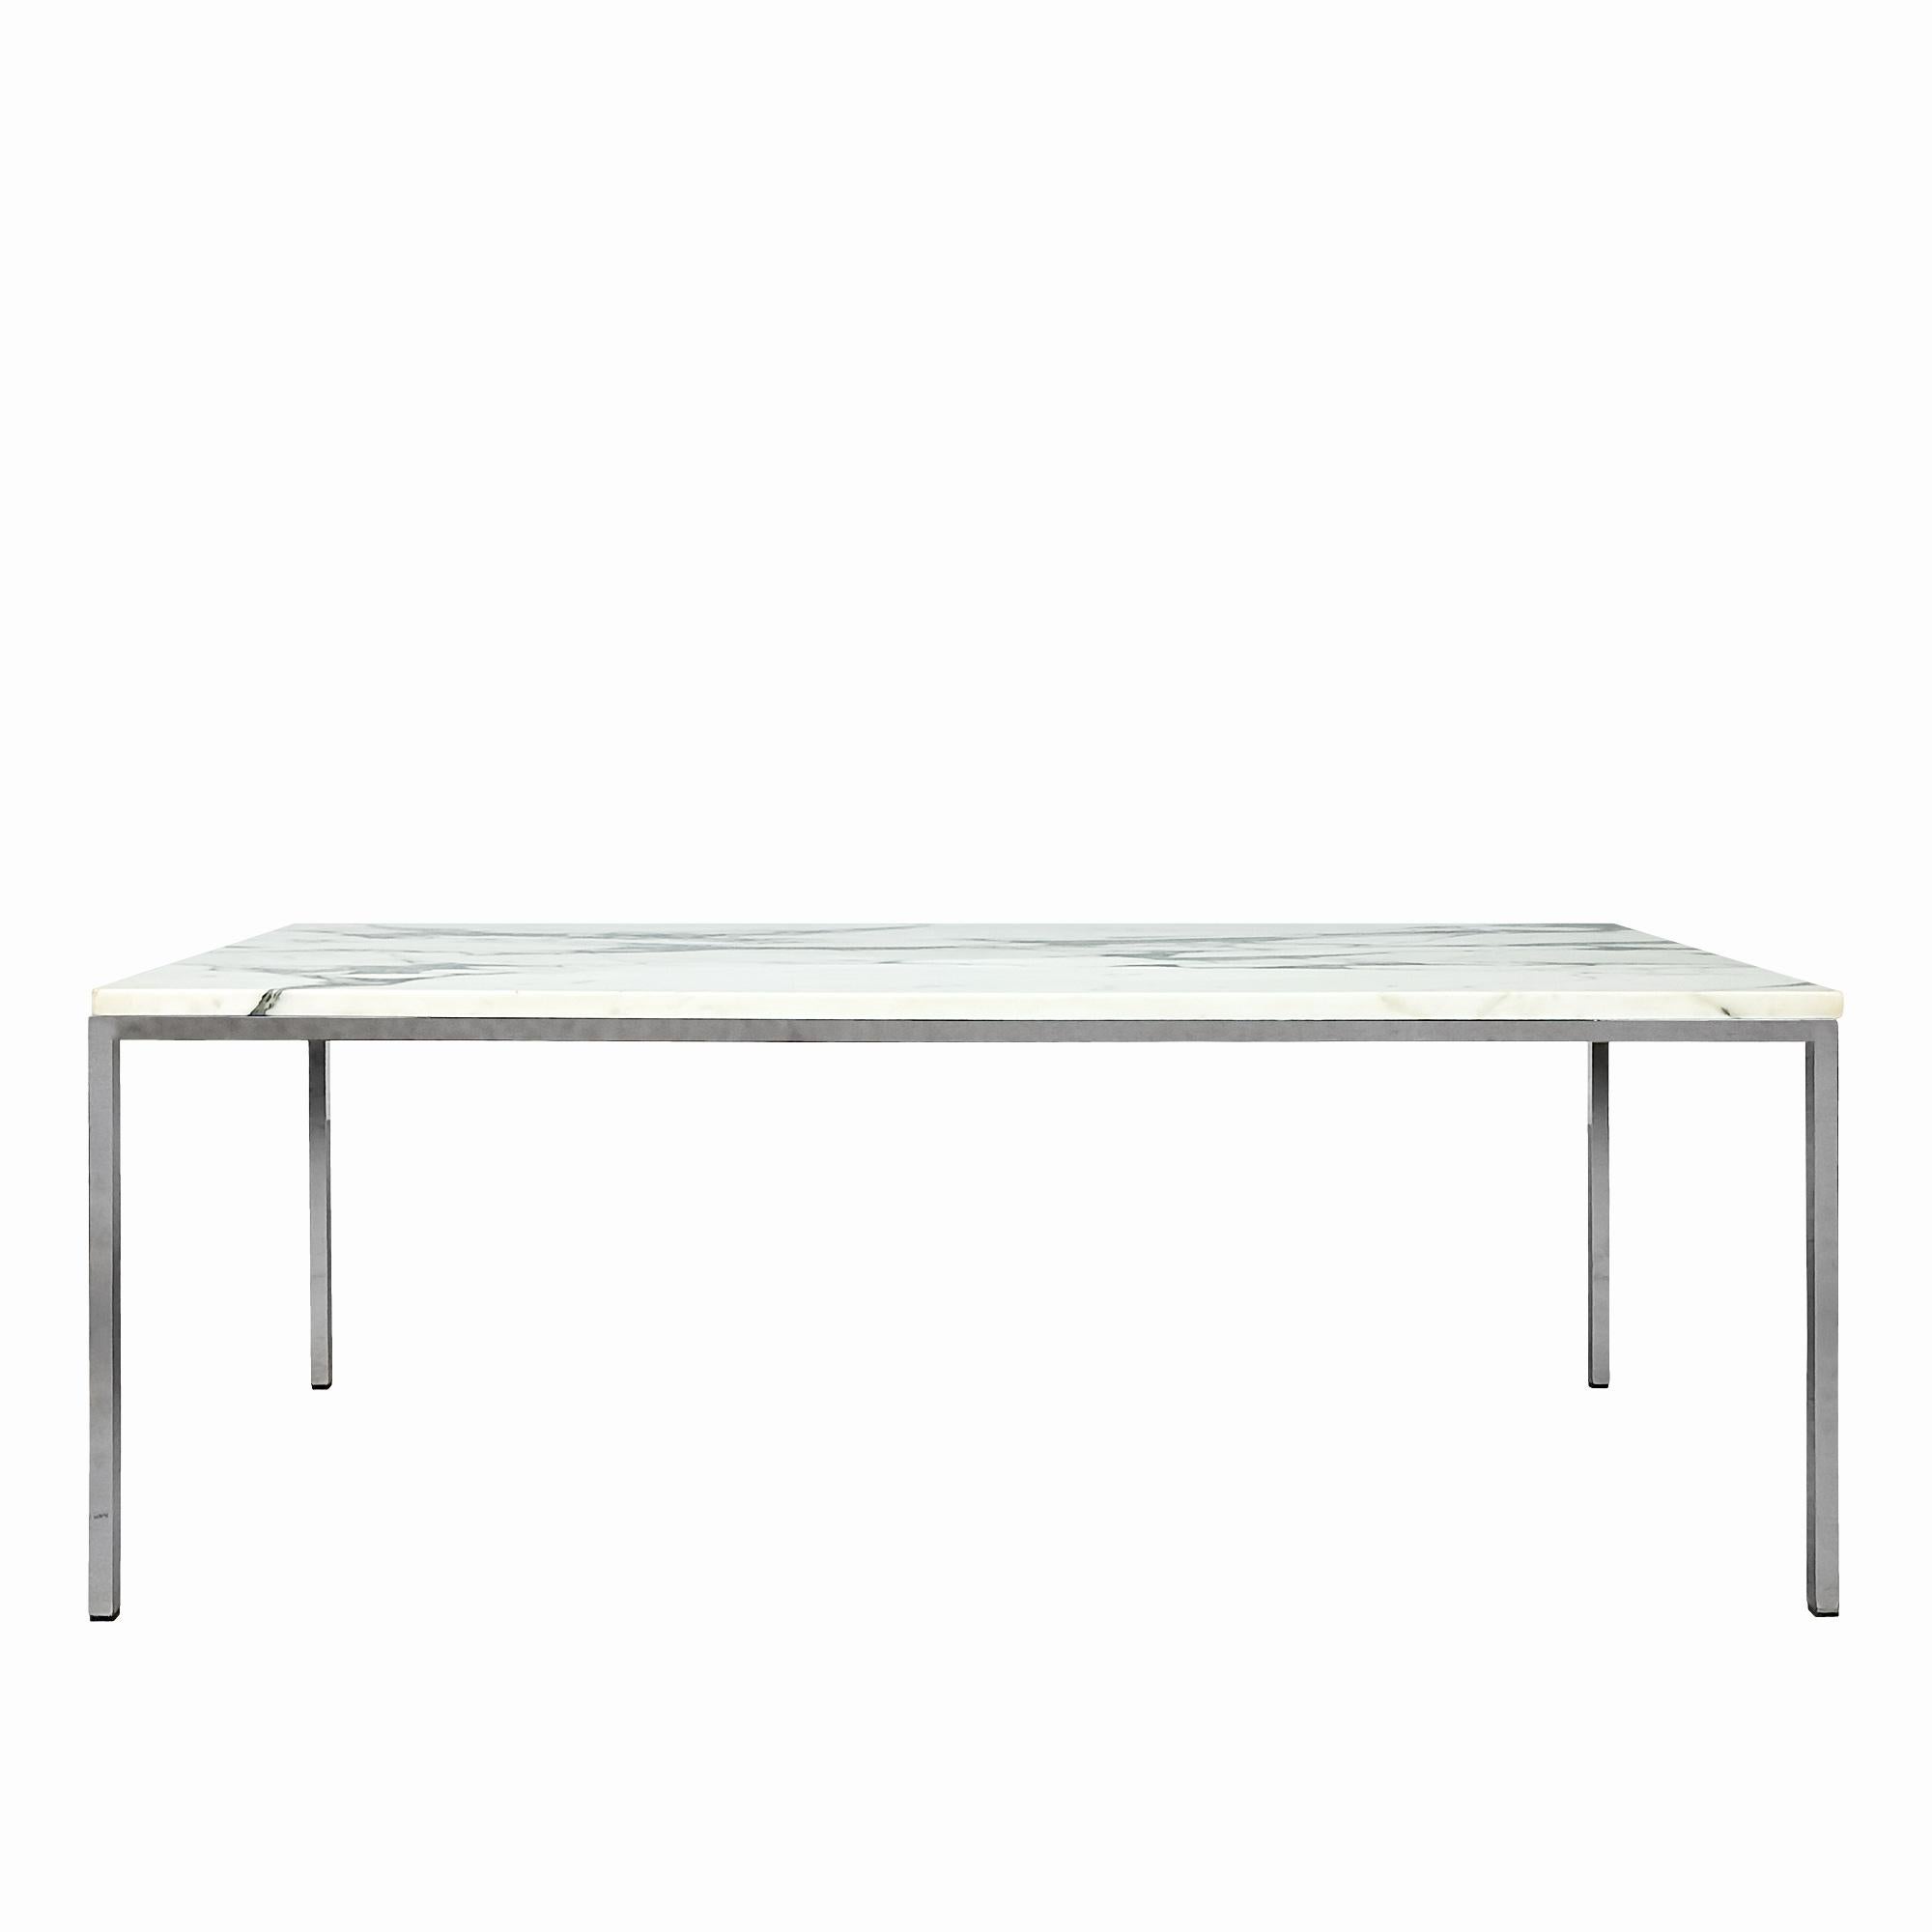 Table basse avec base carrée en acier nickelé surmontée d'un magnifique marbre de Carrare blanc noir-gris. 
Modèle de Florence Knoll.

A.I.C. C. 1970